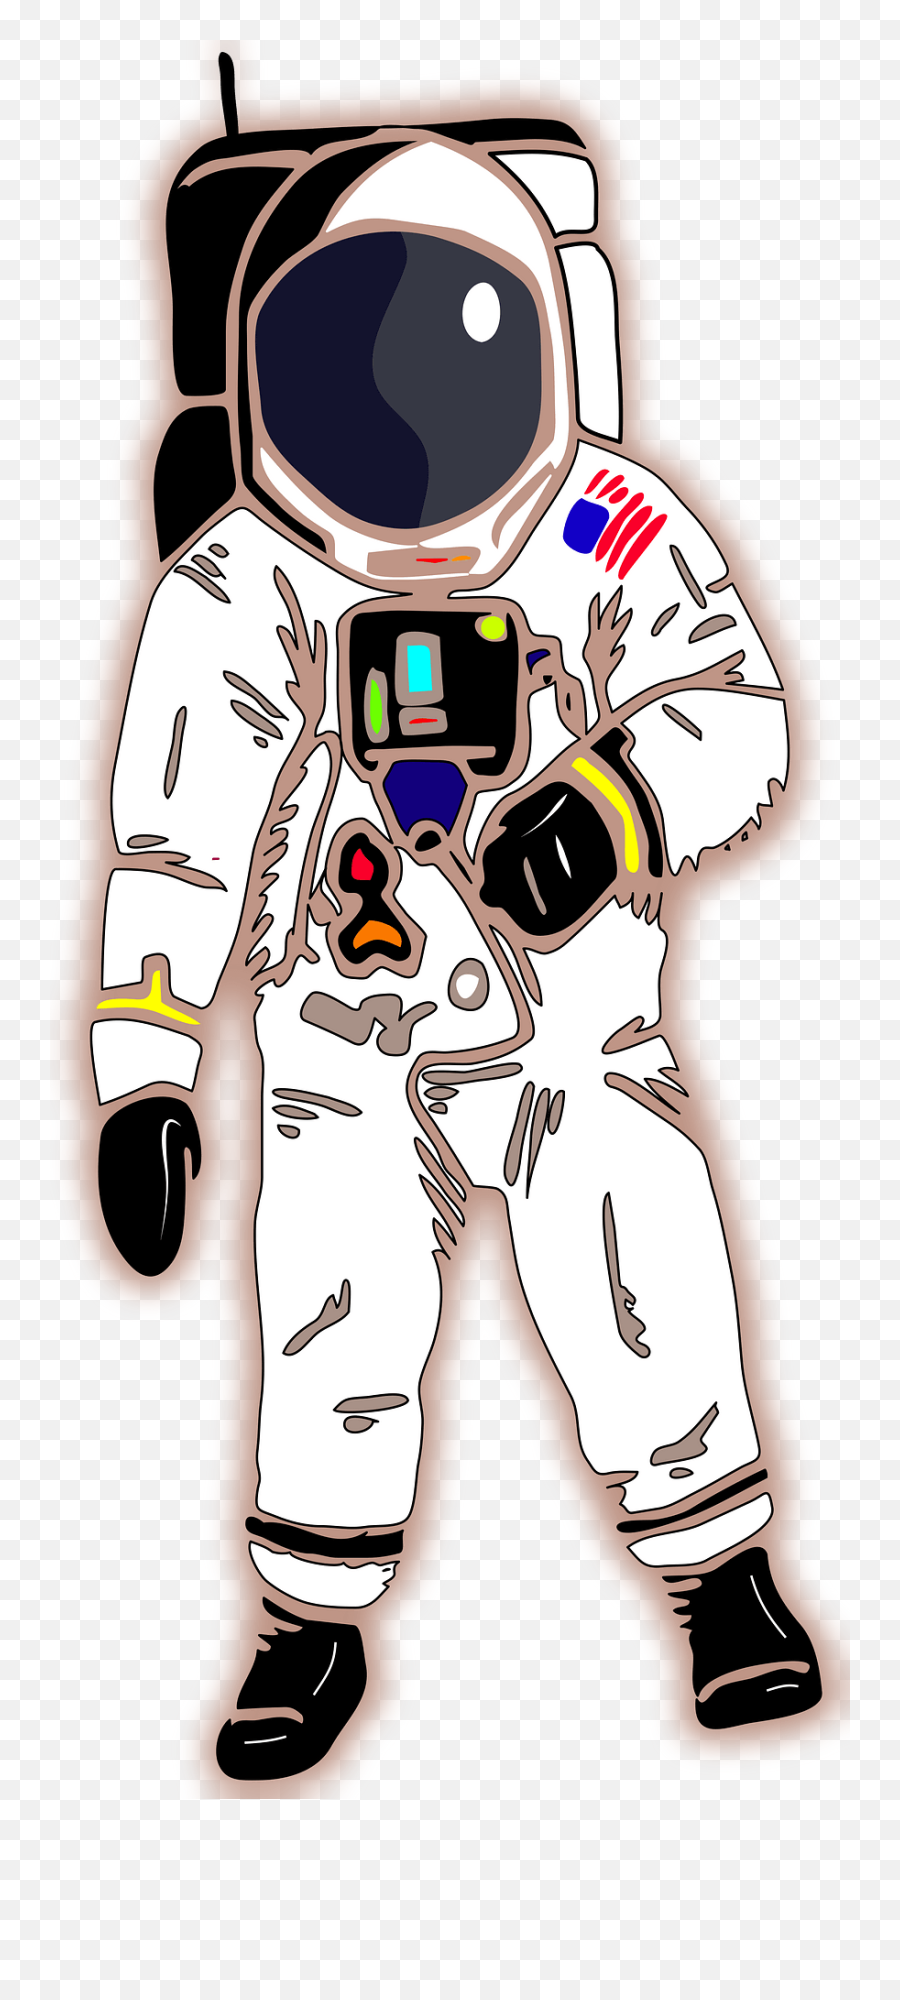 Astronaut Clipart - Transparent Background Astronaut Clipart Gif Emoji,Astronaut Clipart